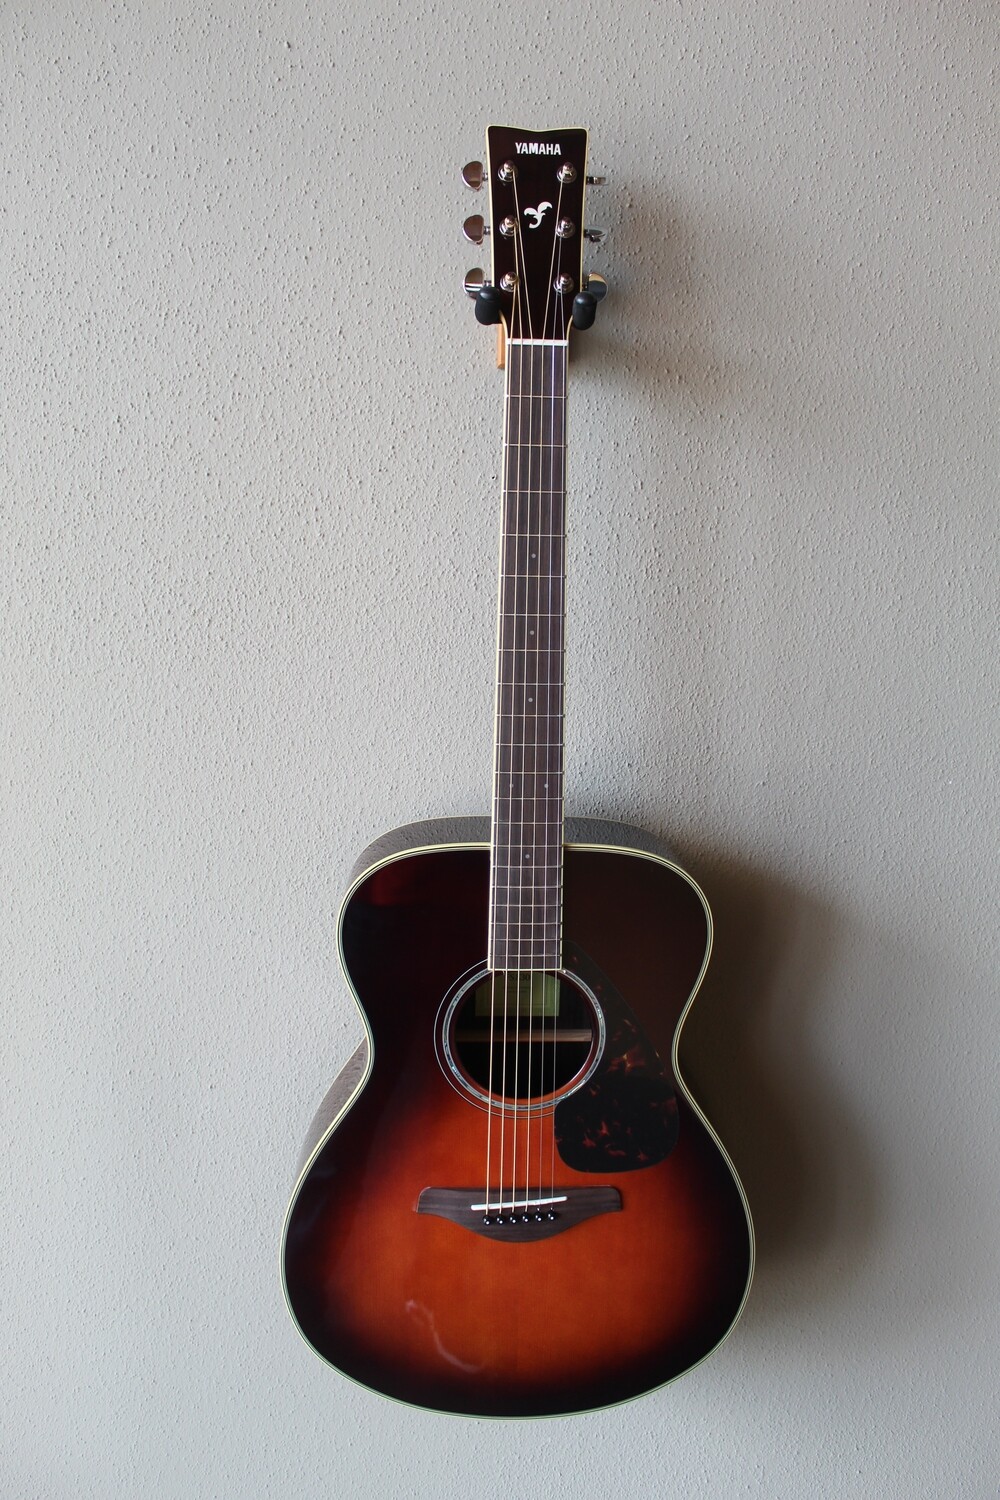 Yamaha FS830 Concert Steel String Acoustic Guitar with Gig Bag - Tobacco Sunburst